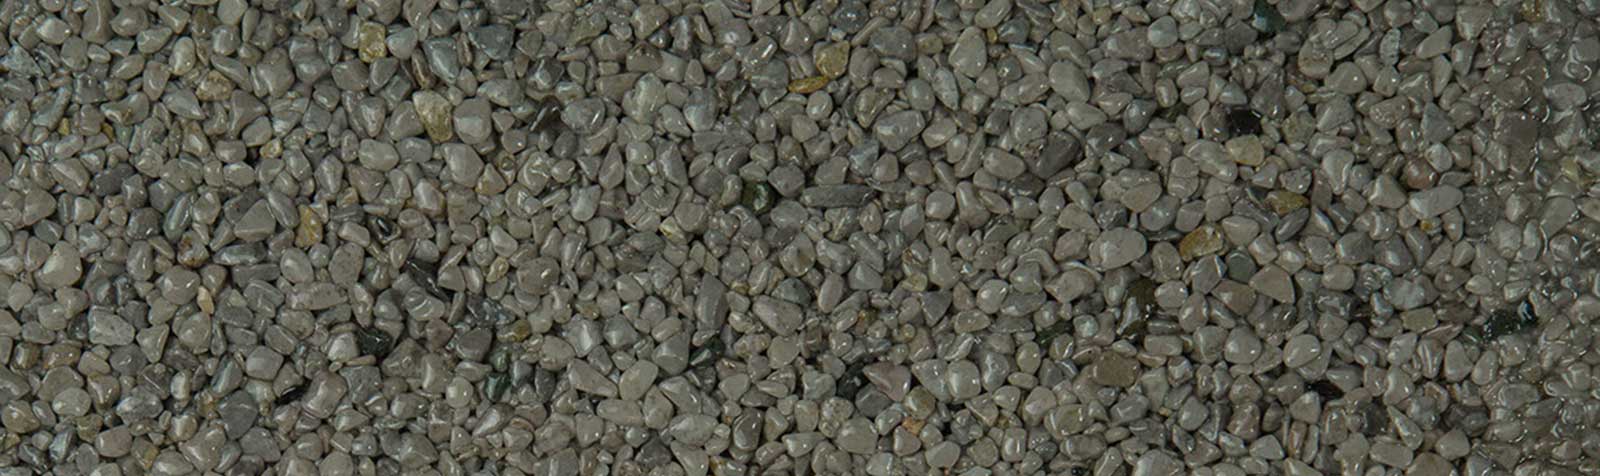 kamenny-koberec-mramorovy-grigio-occhialino